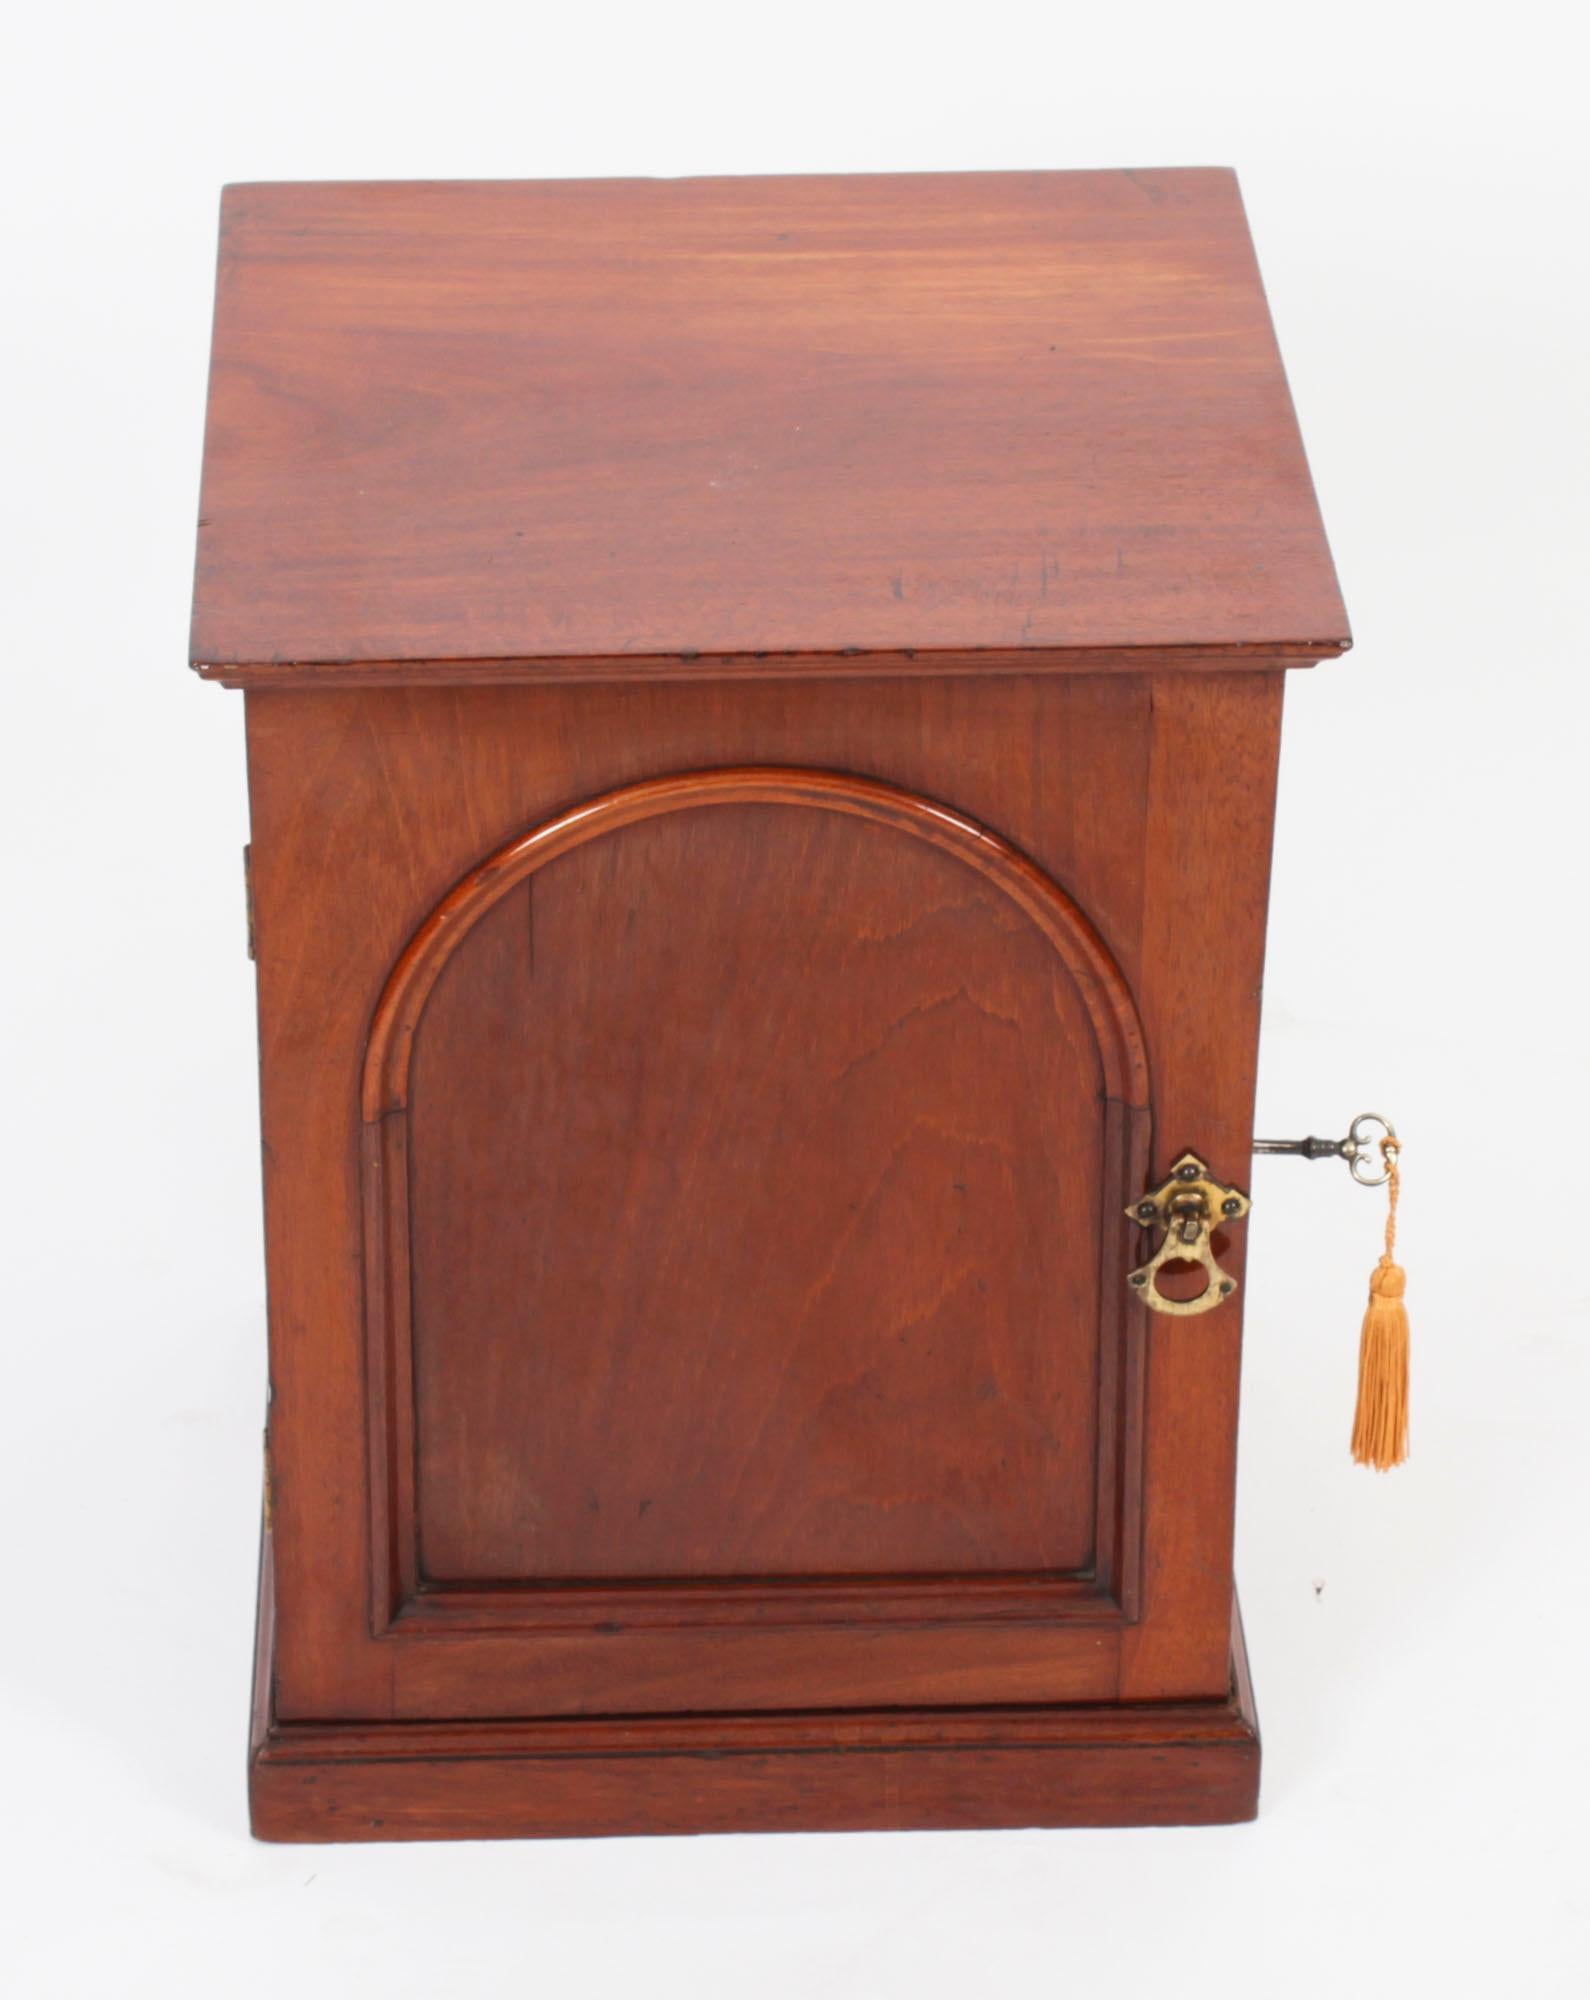 Il s'agit d'un élégant meuble de table victorien en acajou pour collectionneurs de bijoux, datant d'environ 1840.
 
Le meuble est indépendant, fini sur tout le pourtour, et comporte une porte à panneaux, renfermant trois tiroirs sur une base en